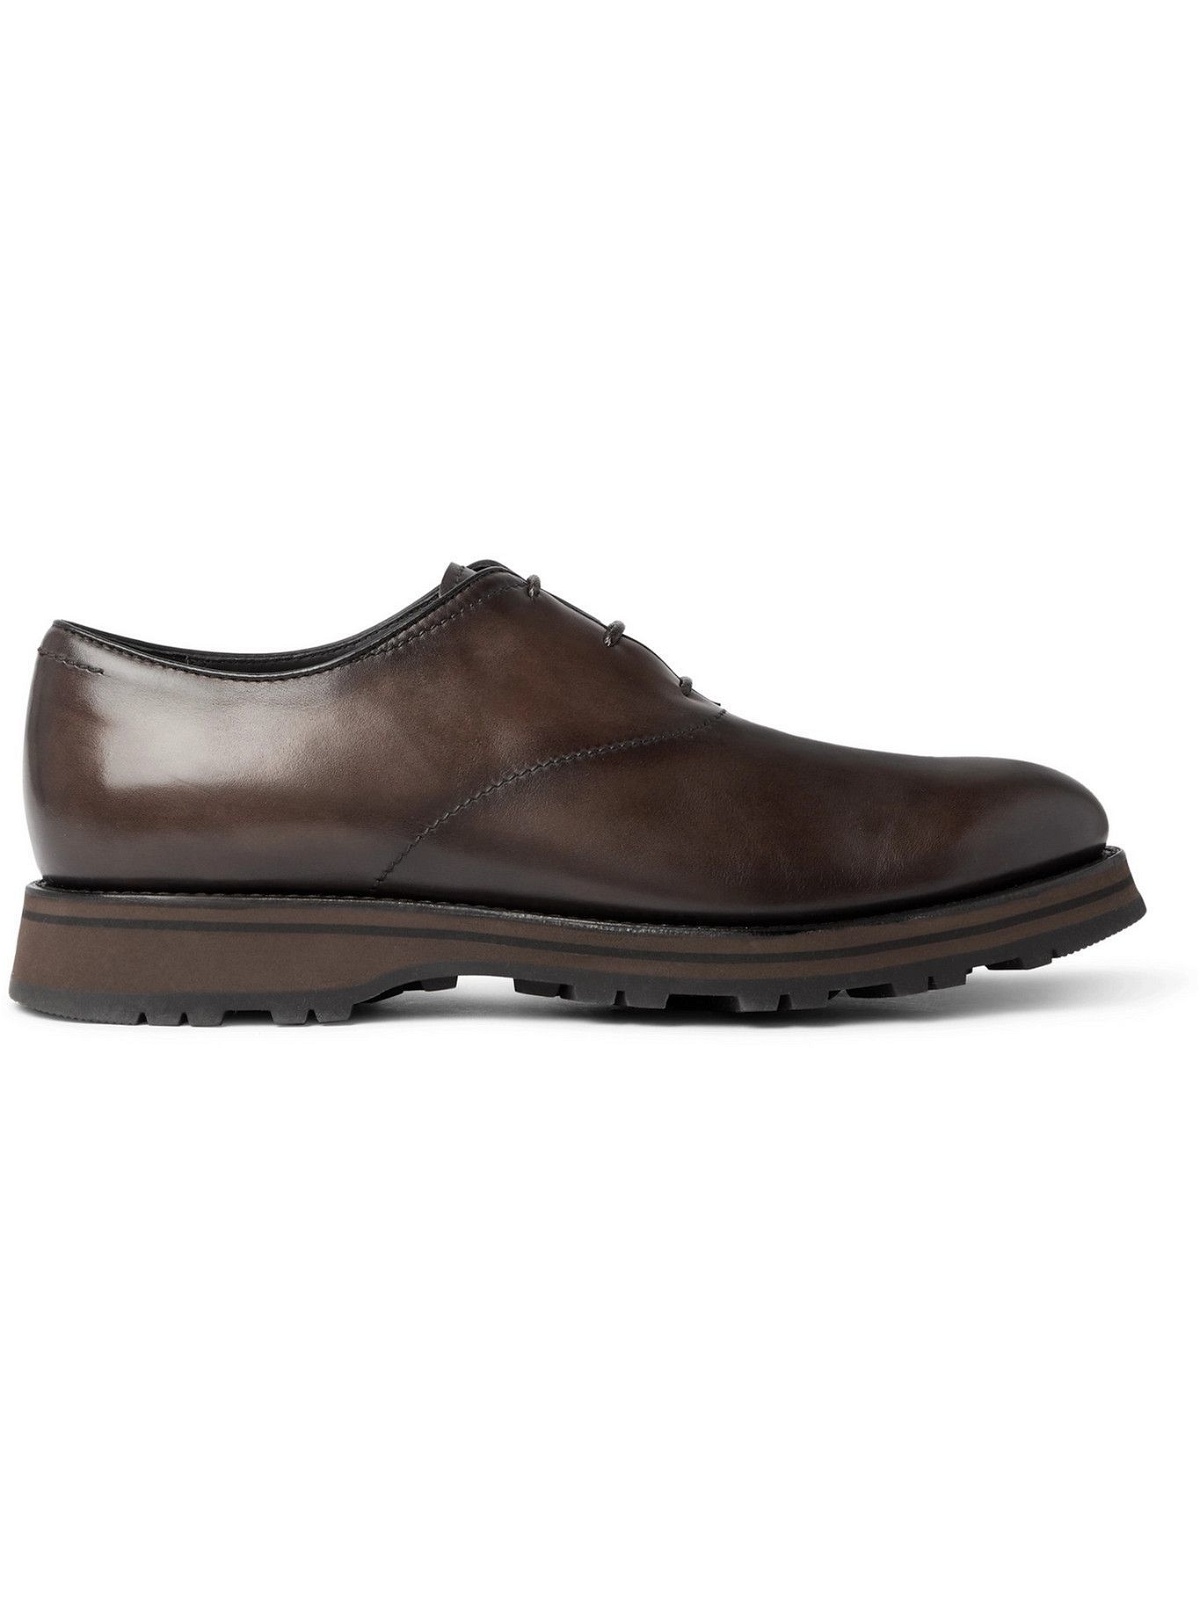 Berluti - Alessio Padova Venezia Leather Oxford Shoes - Brown Berluti